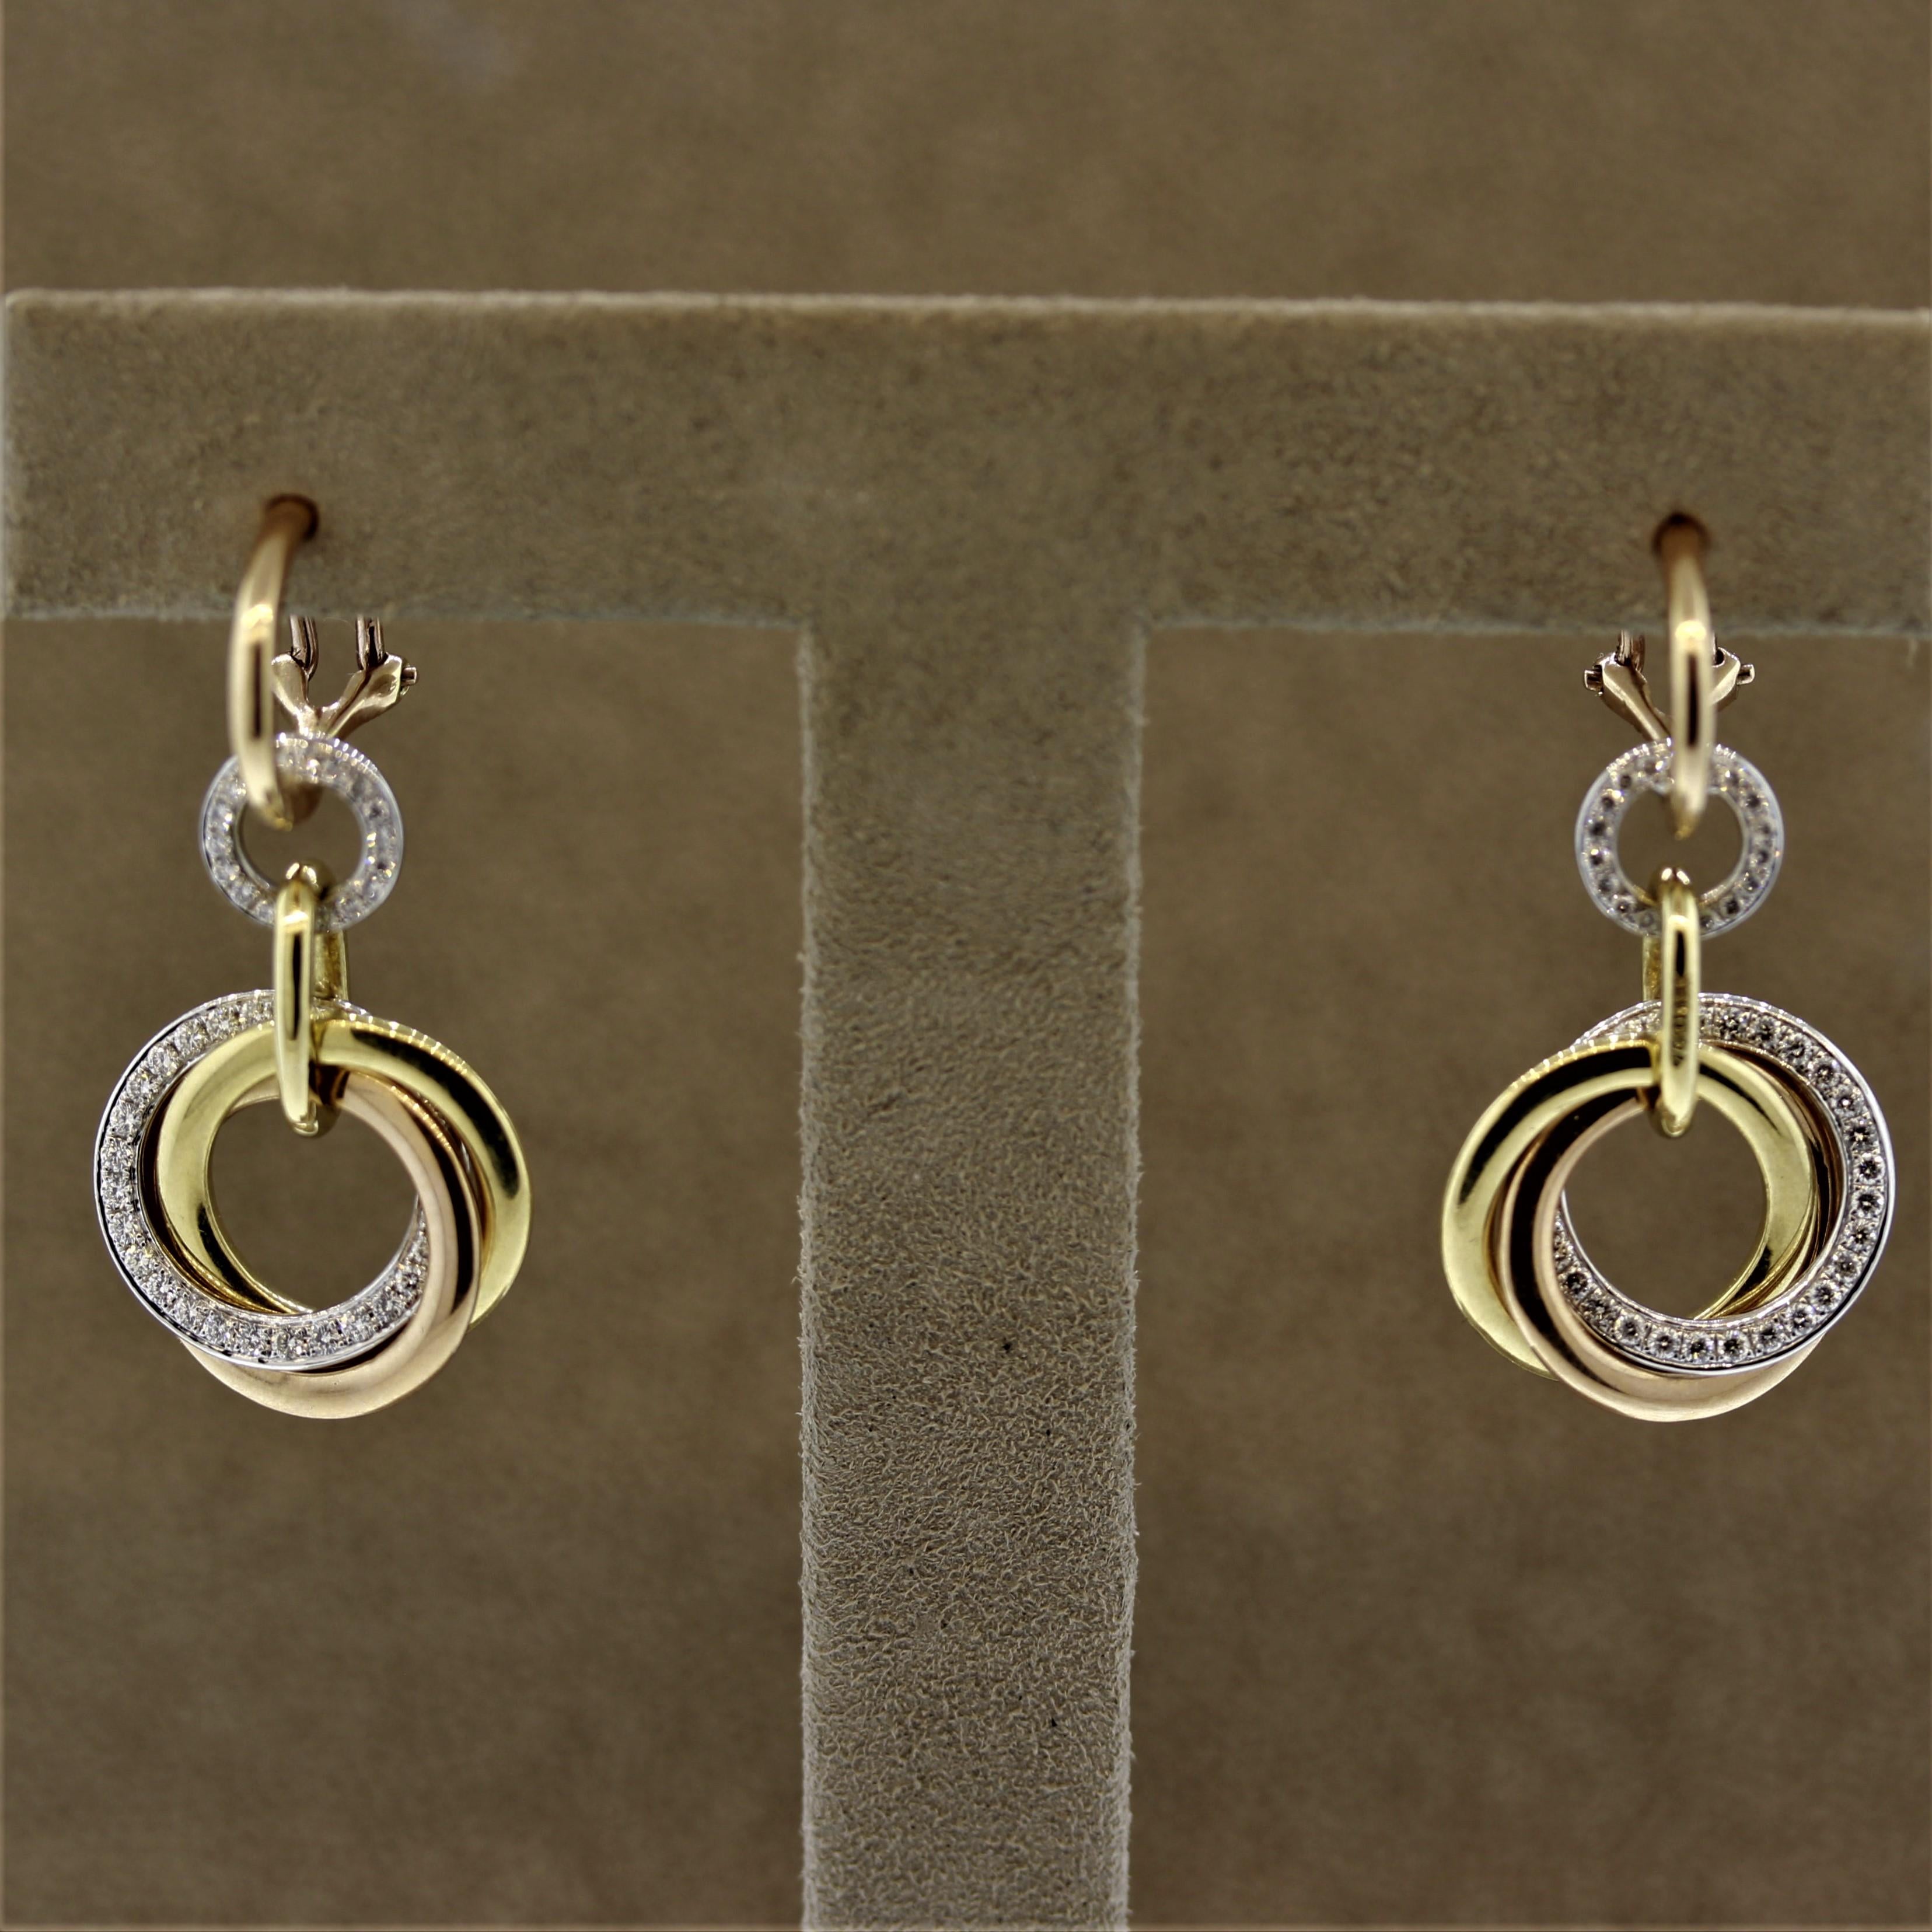 Ein einzigartiges und stilvolles Paar Ohrringe. Sie sind aus 18-karätigem Gold gefertigt und verfügen über 3 unabhängige Goldreifen aus Weiß-, Gelb- und Roségold, die miteinander verzahnt sind. Die Reifchen aus Weißgold sind mit runden Diamanten im